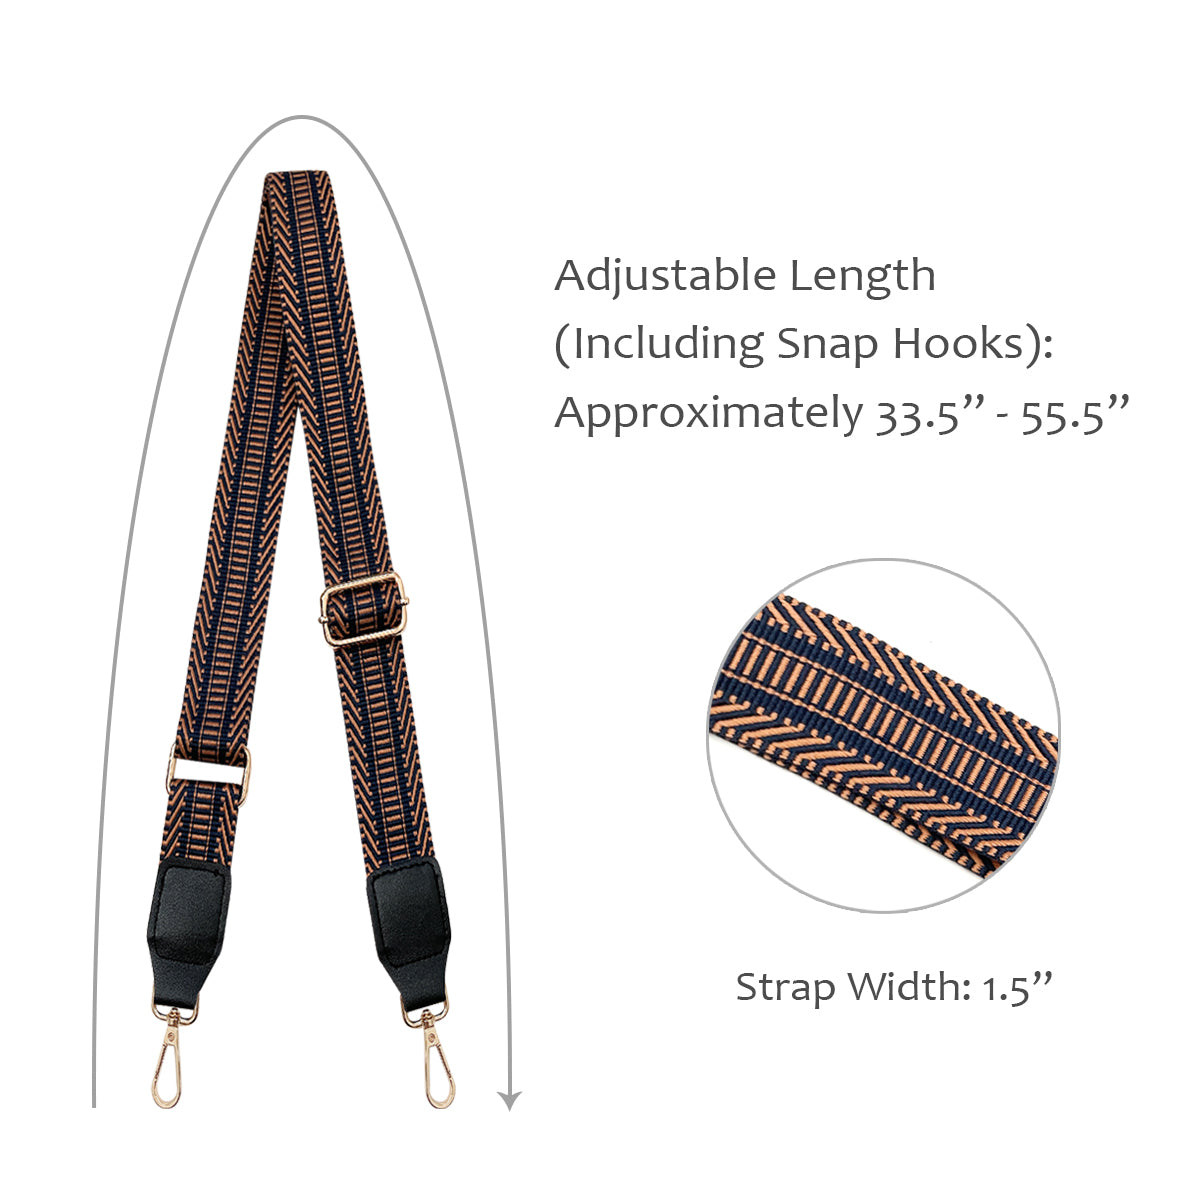 Adjustable Bag Straps - 1.5 